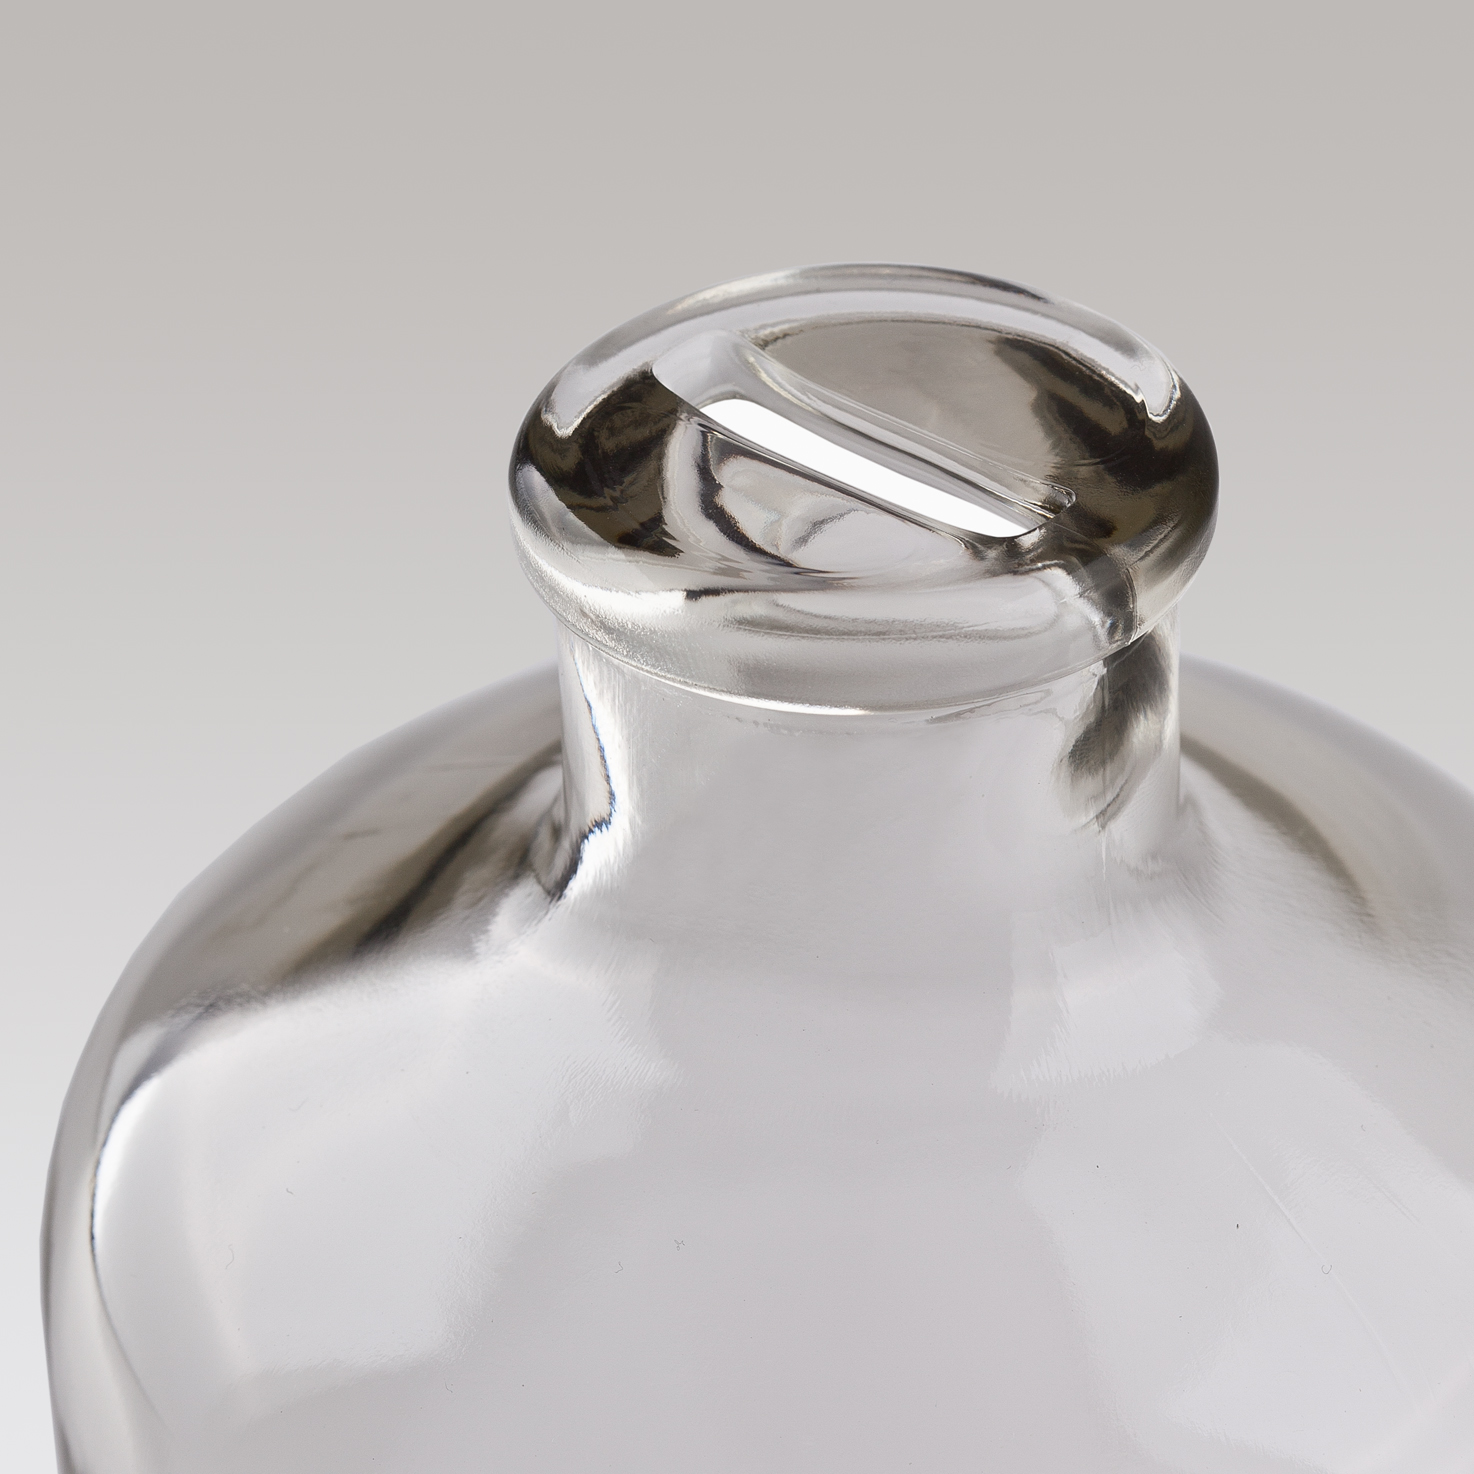 Sparflasche 1,0 Liter mit konischem Schlitz - Detailansicht